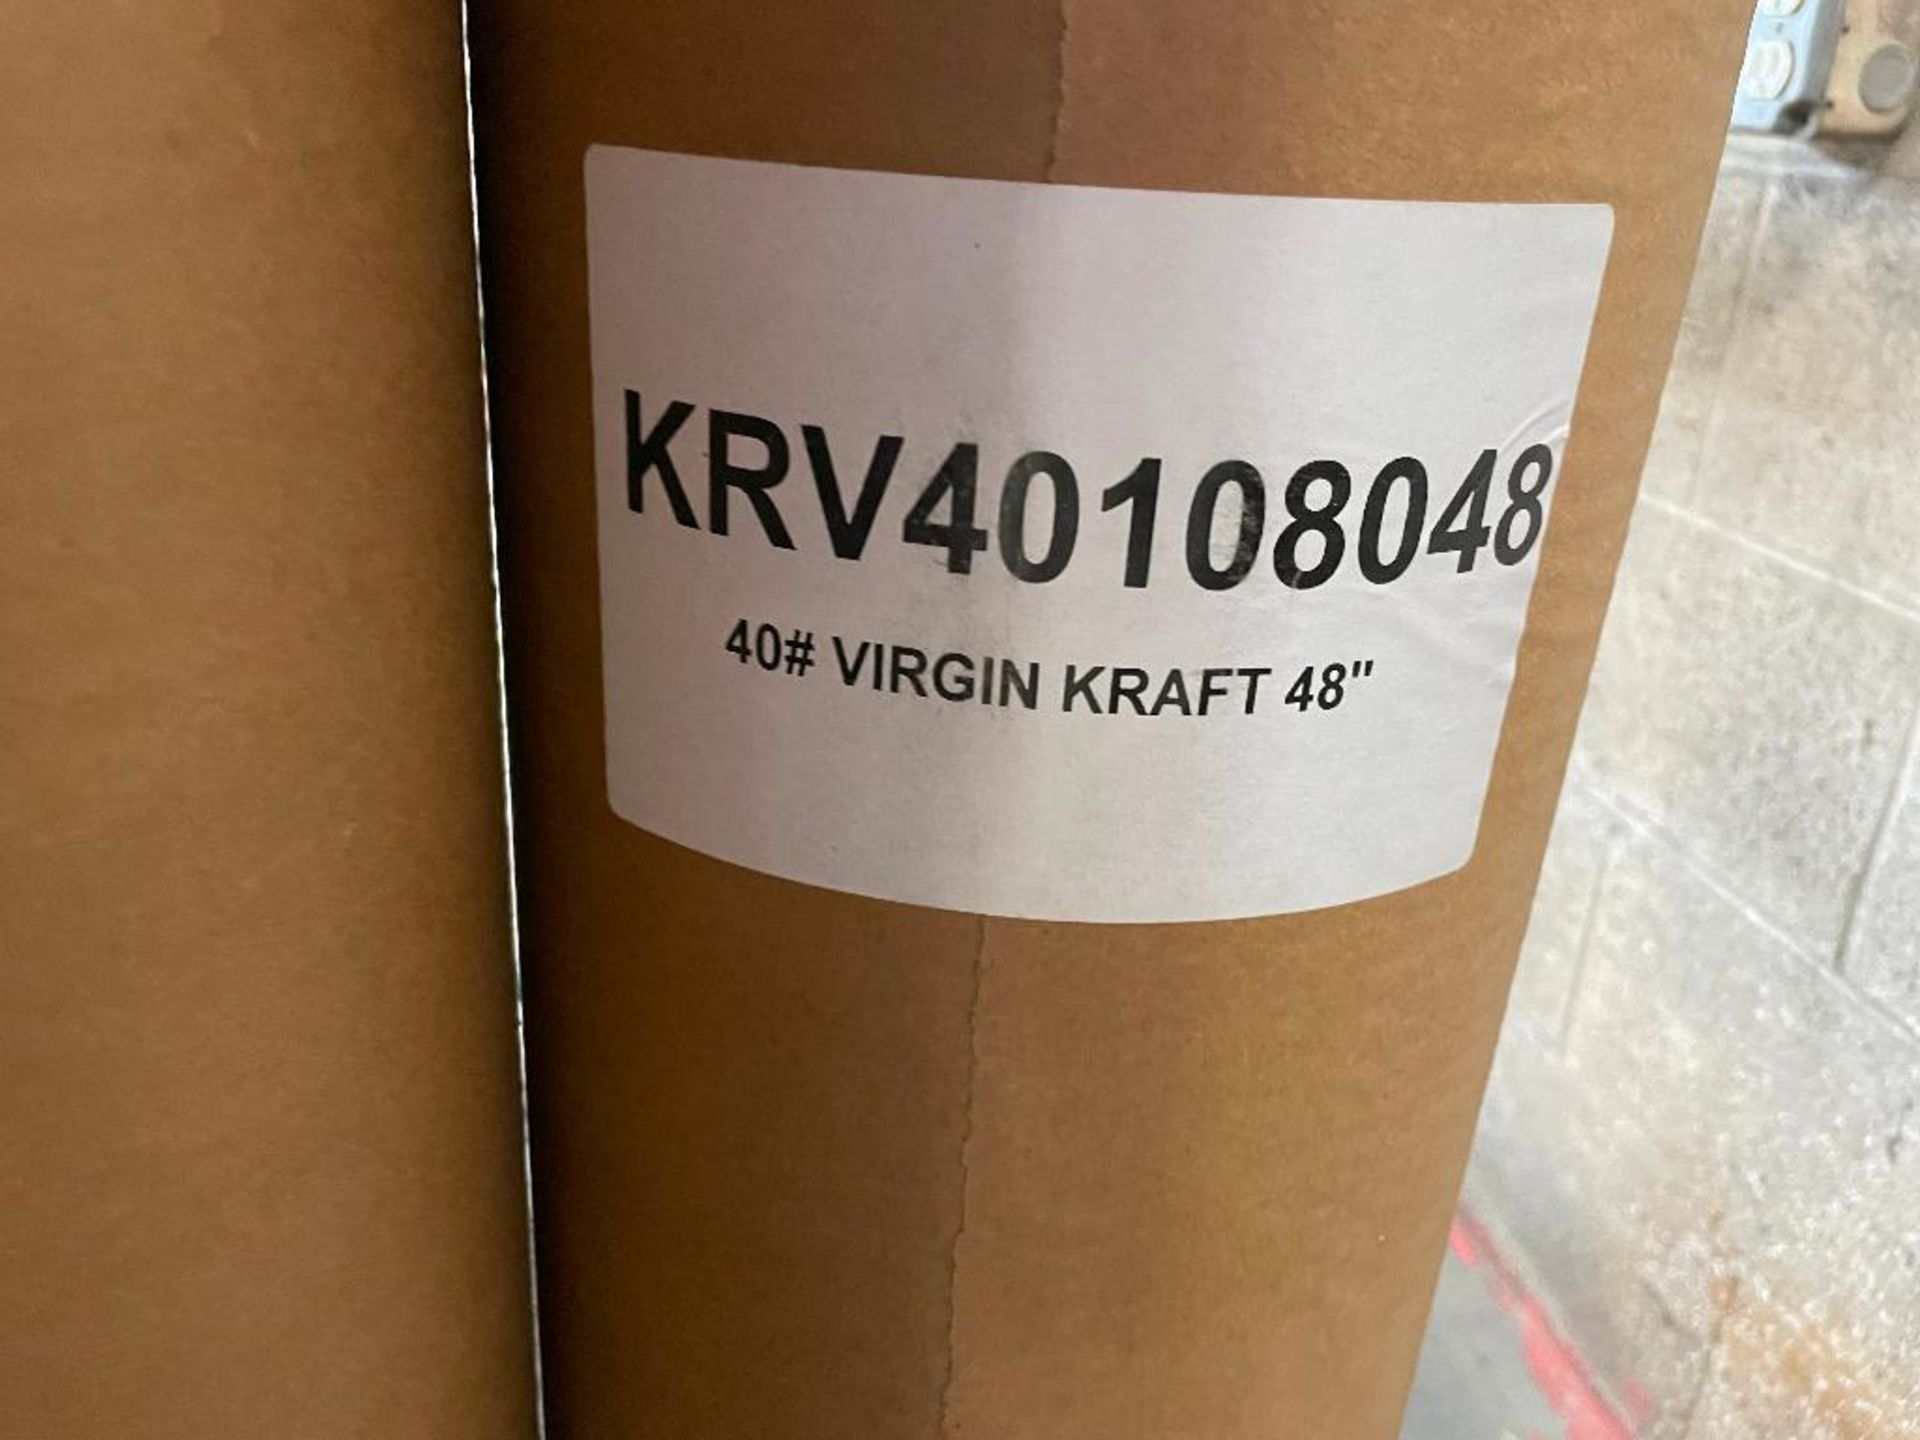 DESCRIPTION: PALLET OF 40# VIRGIN KRAFT 48" BROWN MASKING PAPER BRAND / MODEL: KRV401108048 ADDITION - Image 2 of 2